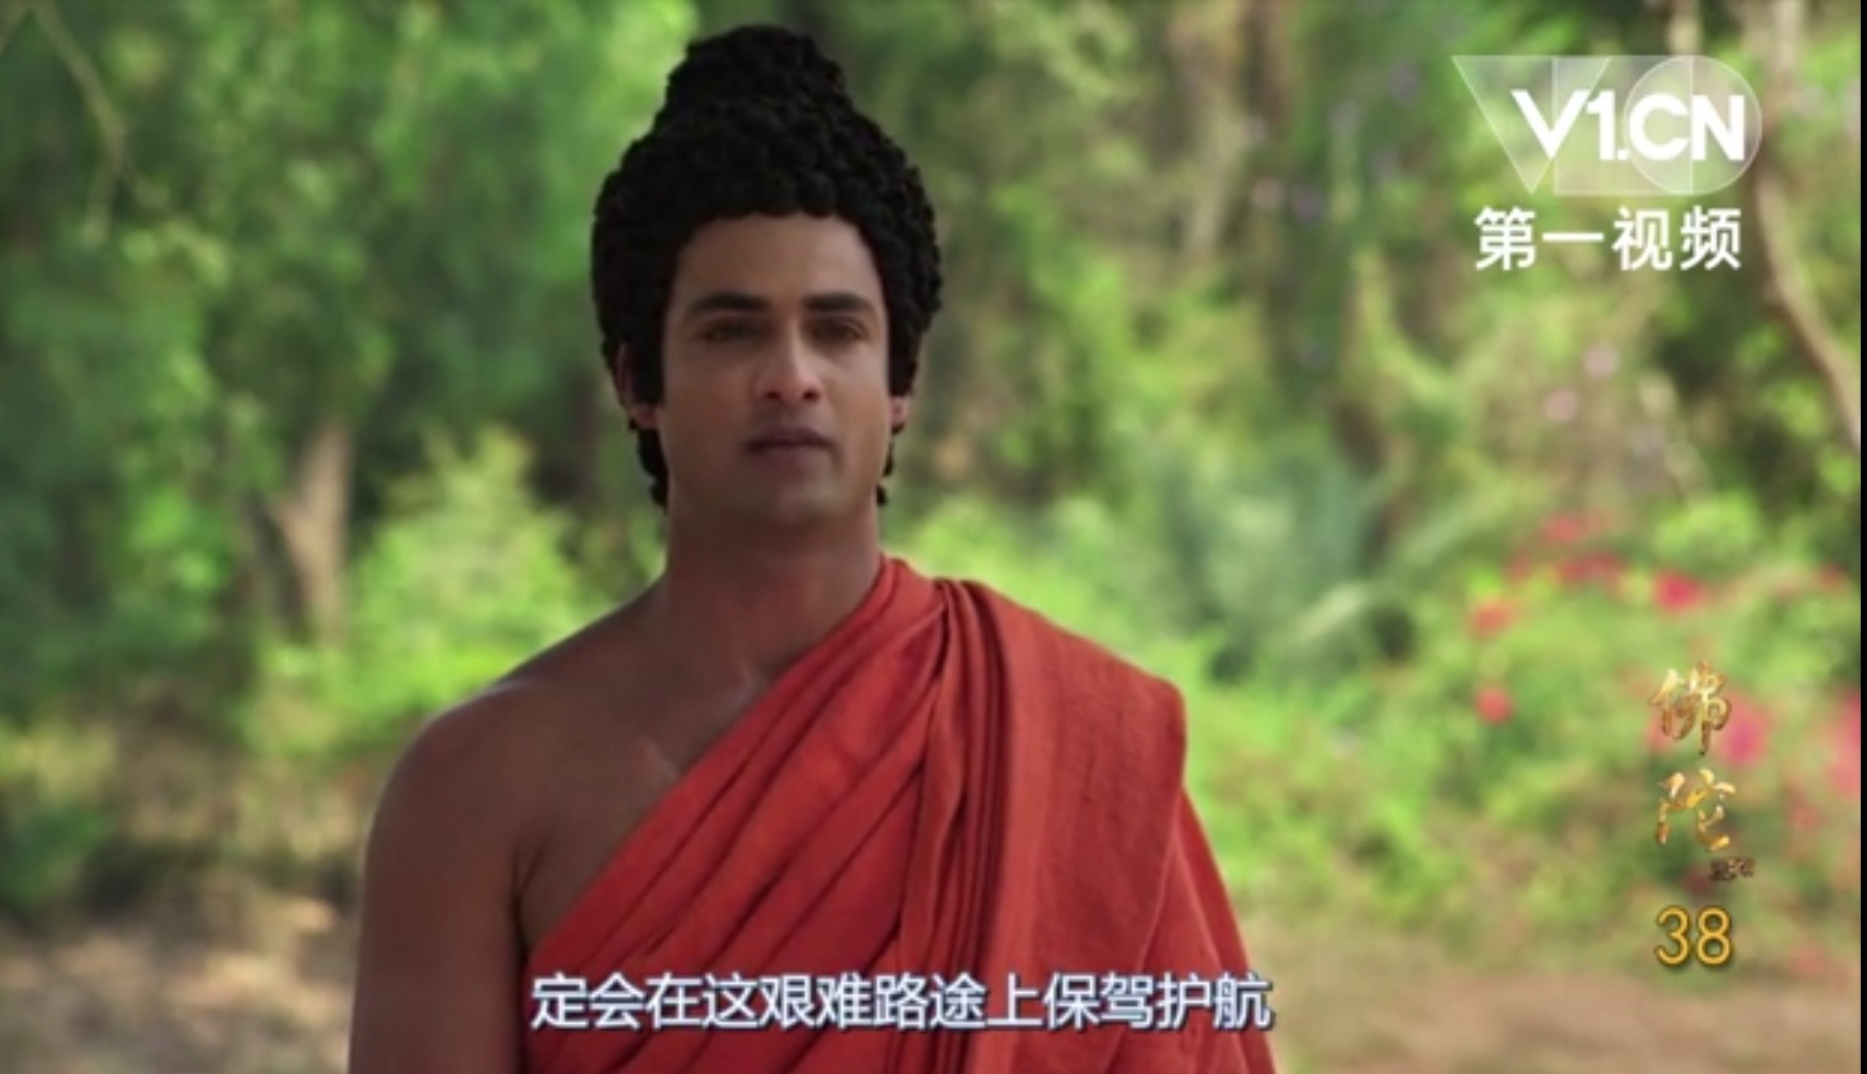 参考资料: 印度54集电视连续剧《佛陀传》 2020